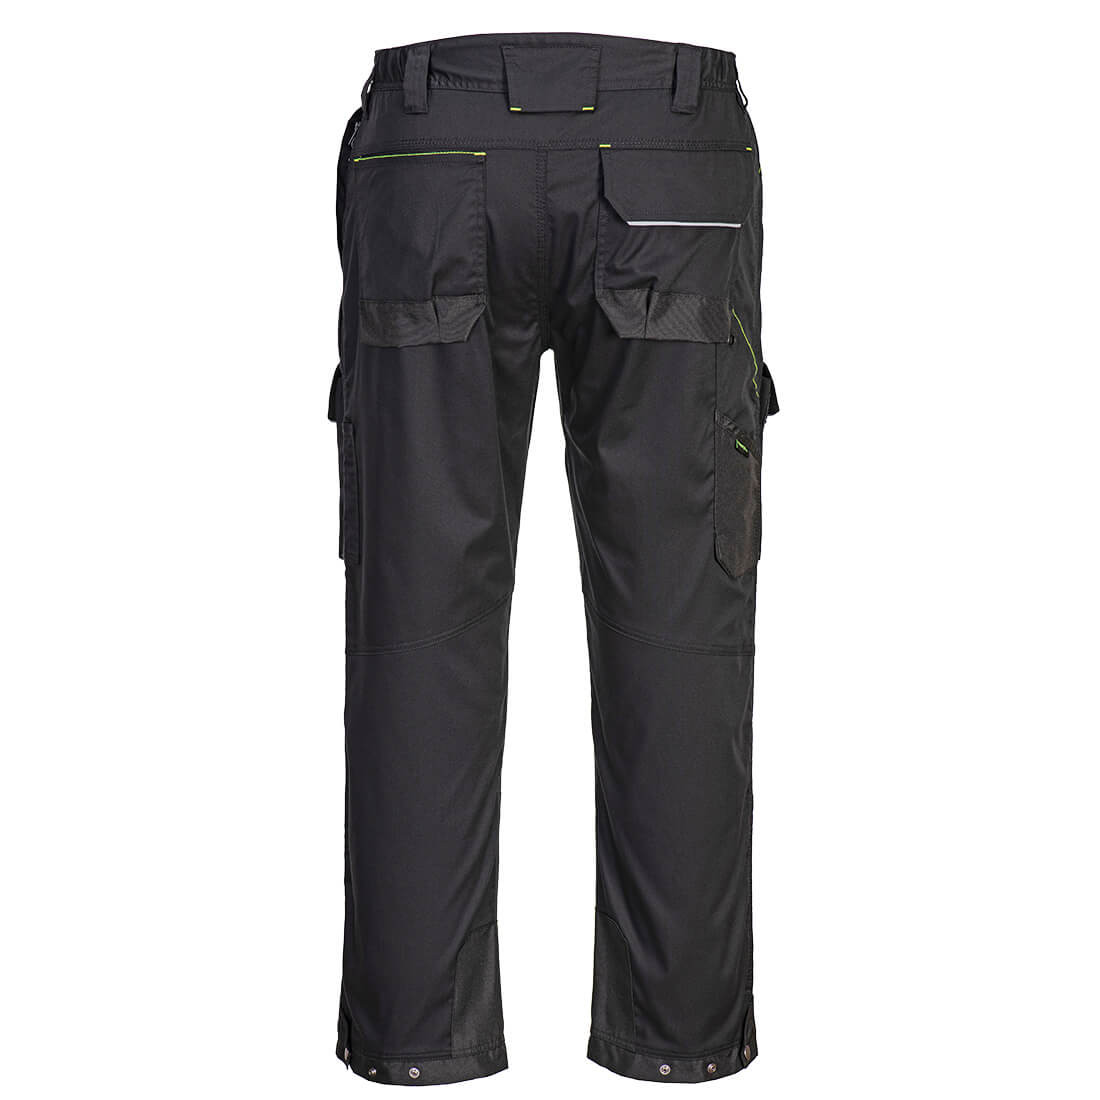 Pantaloni talie PW3 pentru utilizare cu ham - Imbracaminte de protectie